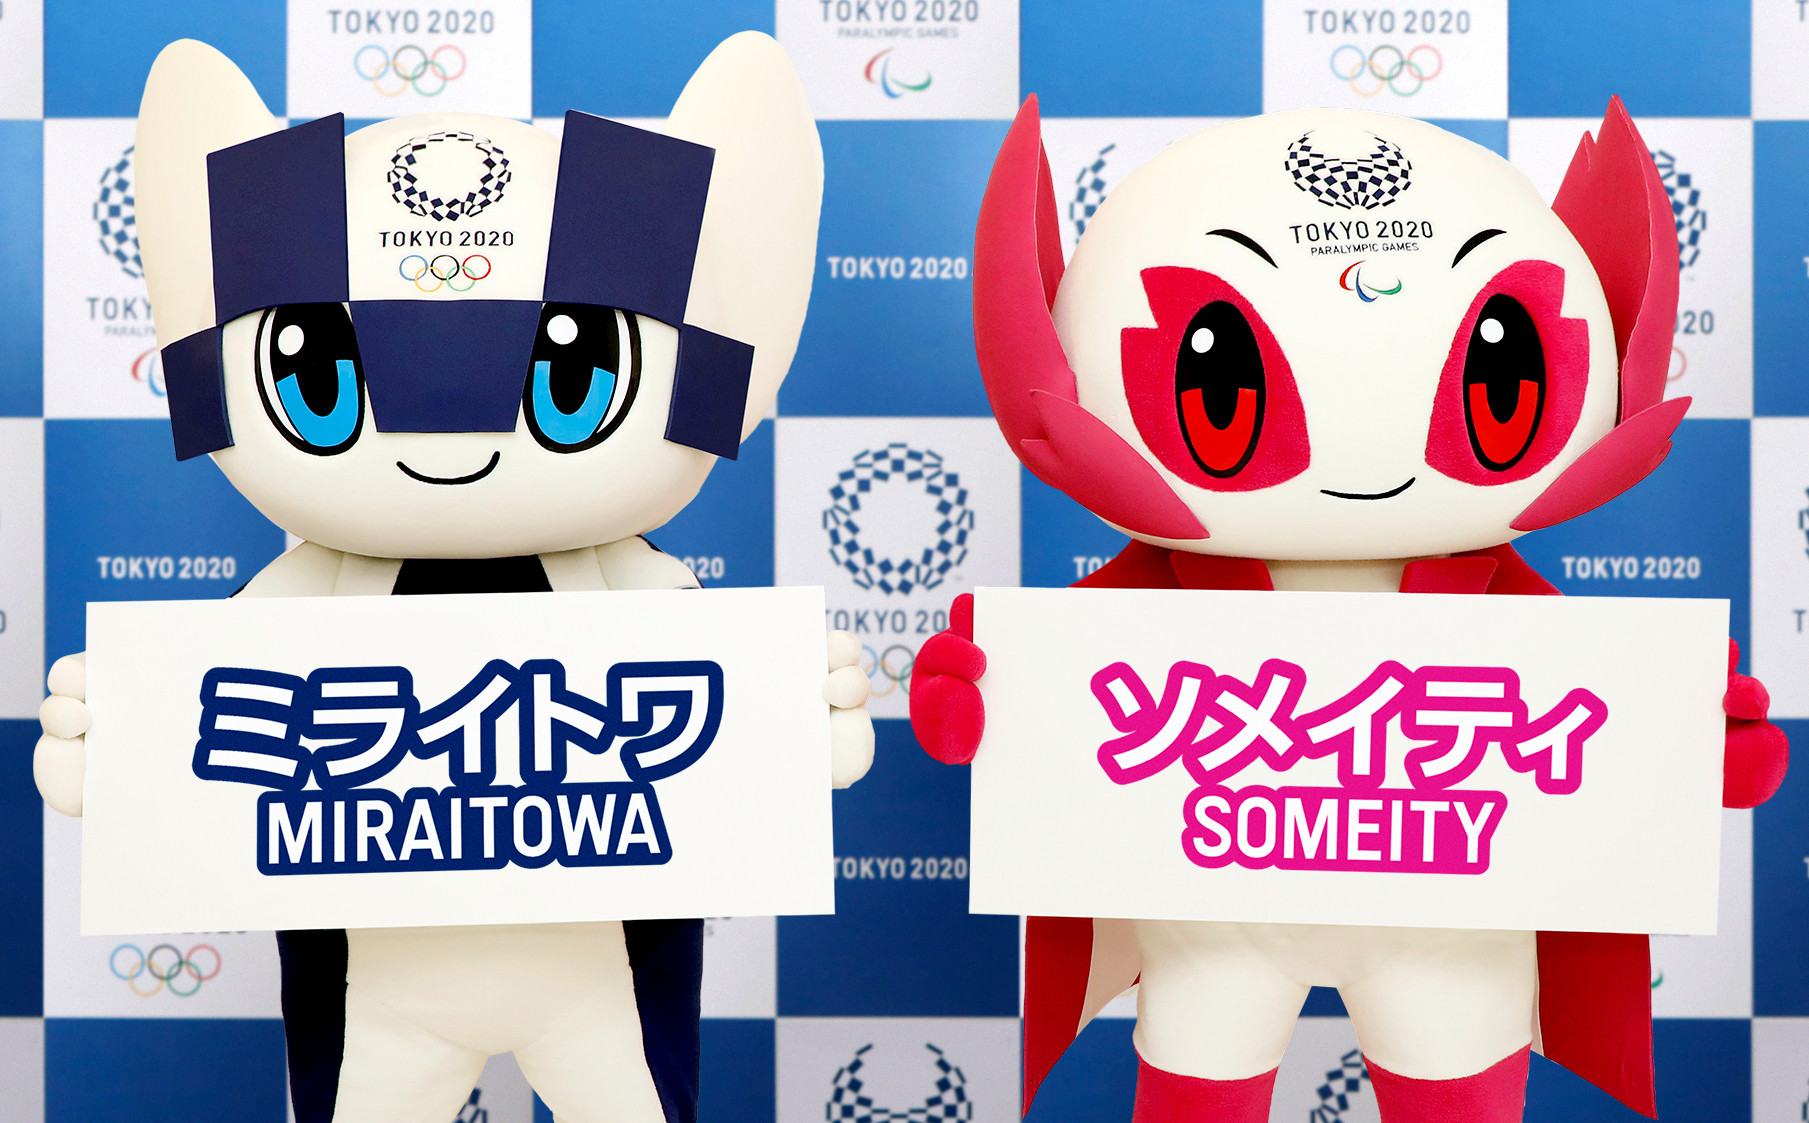 2020年 東京オリンピックのマスコットキャラクター「ミライトワ」と、パラリンピックのマスコットキャラクター「ソメイティ」